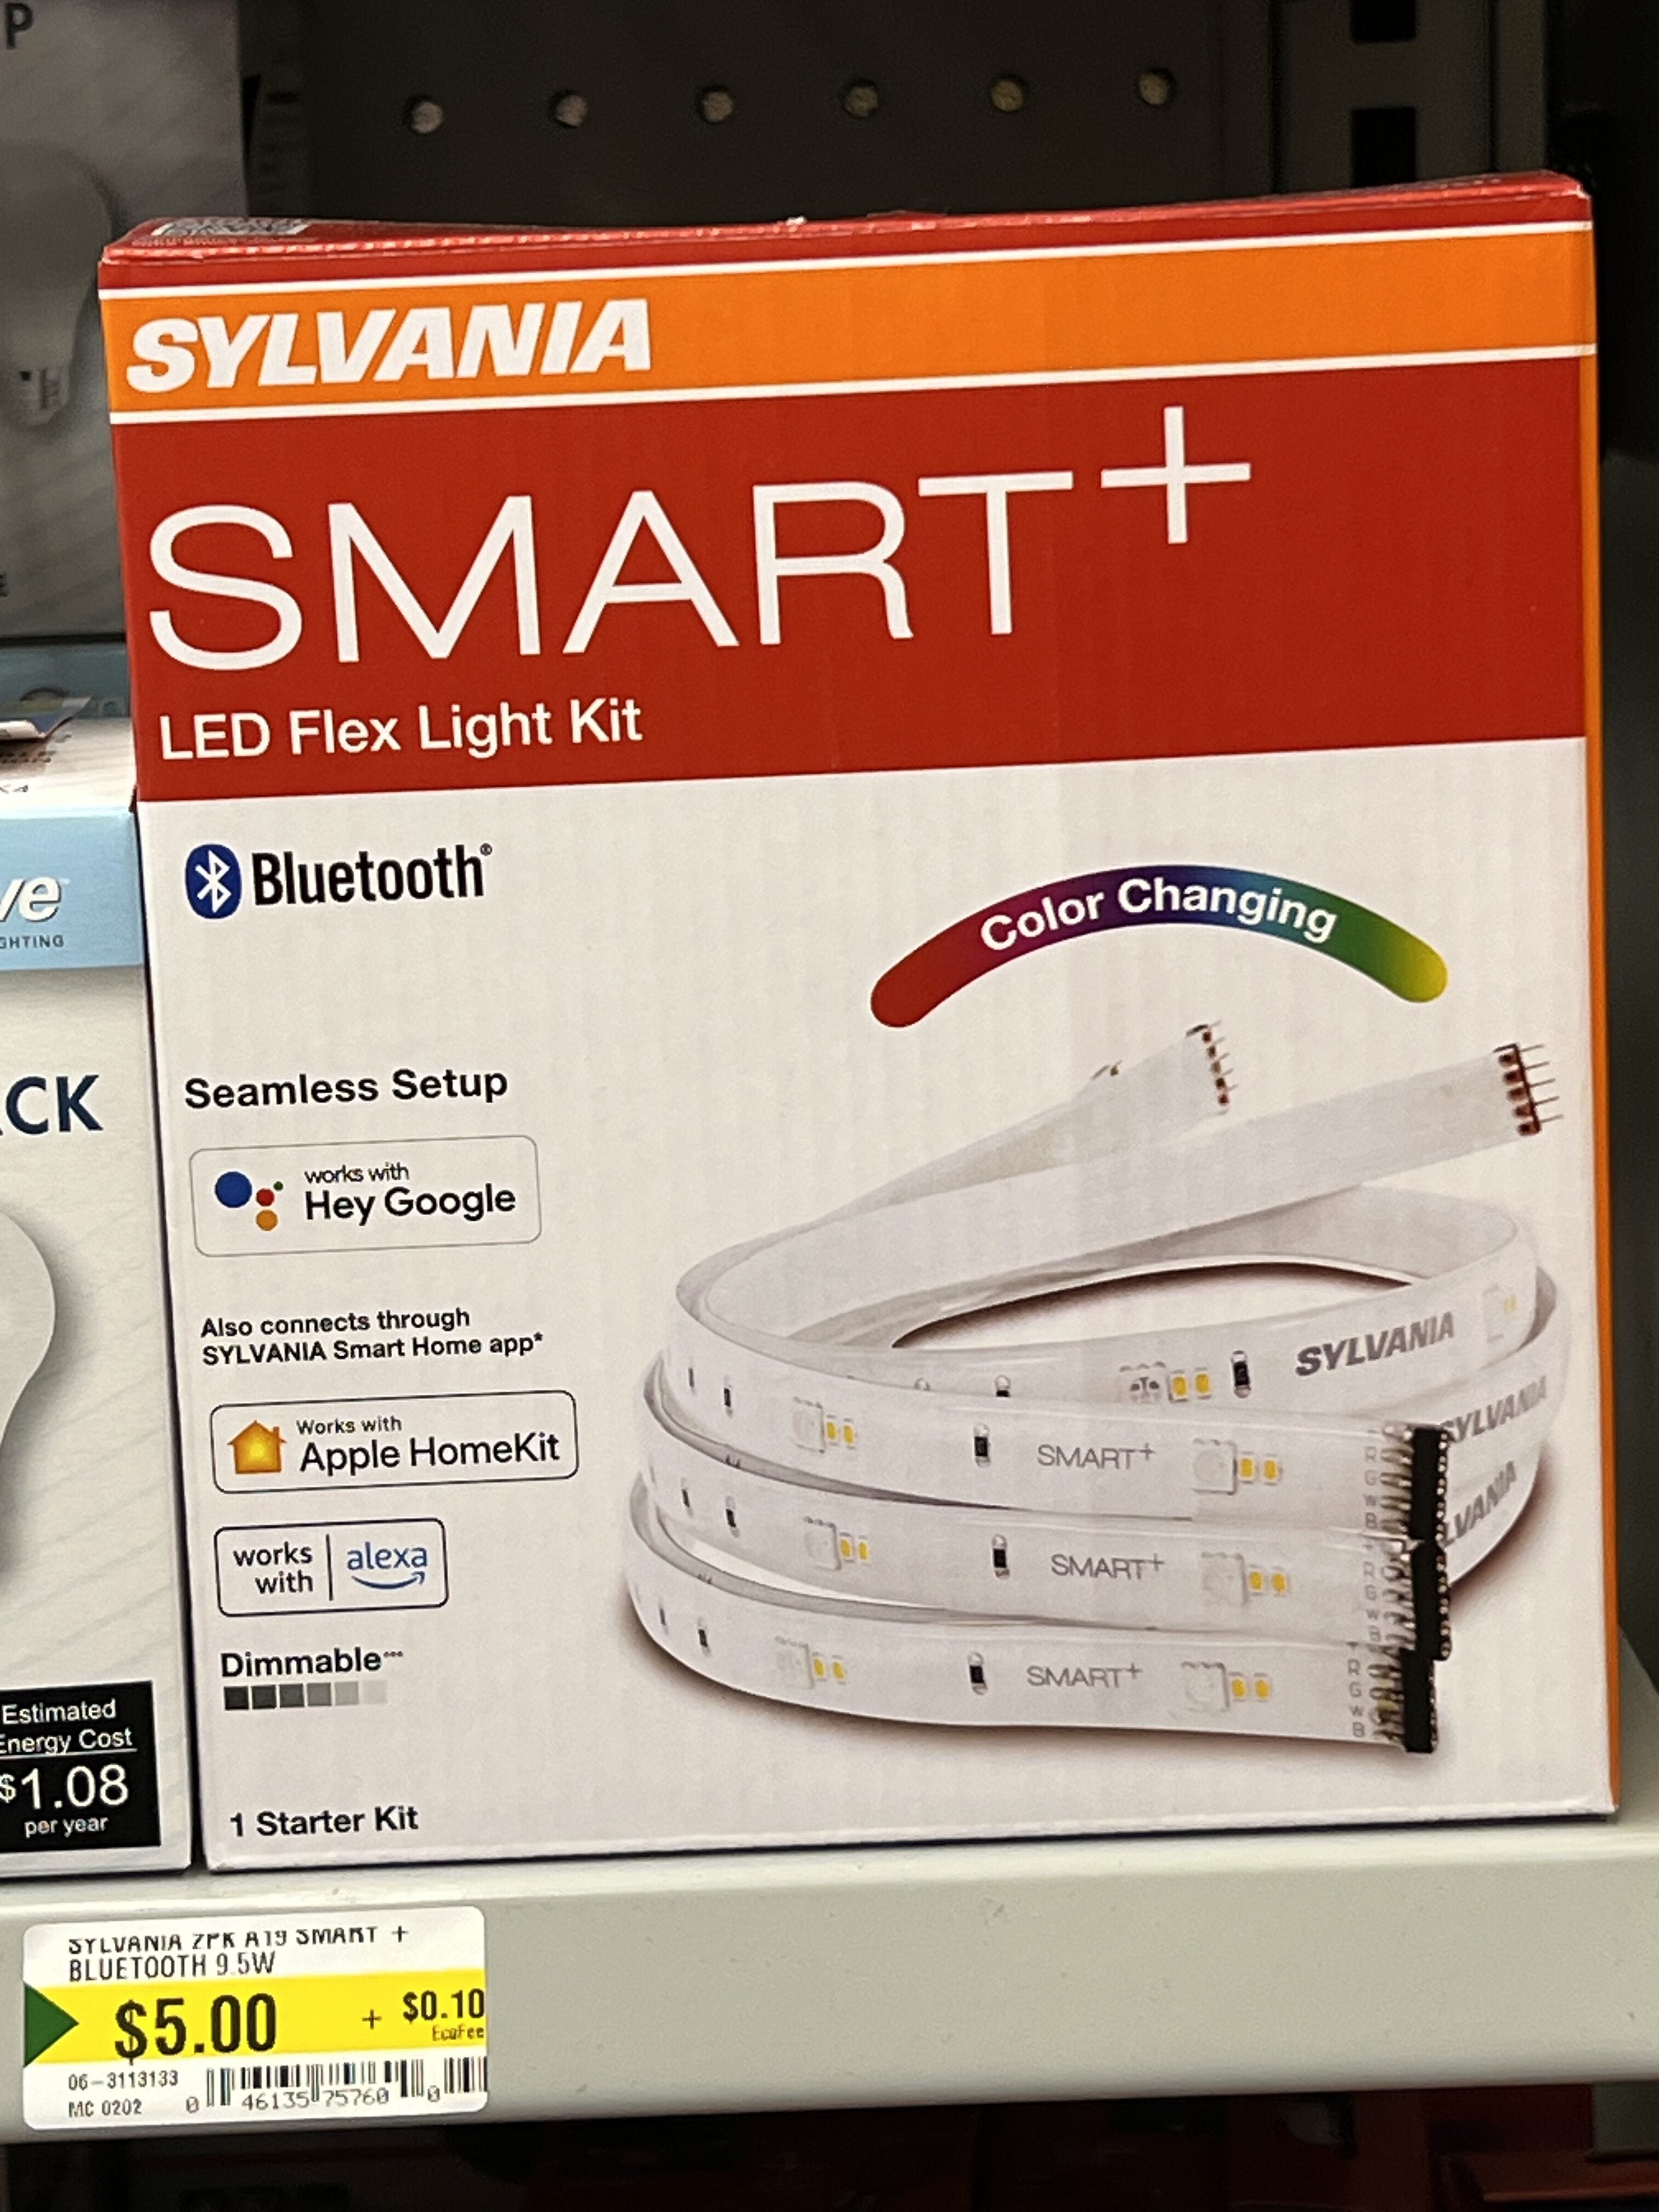 Dollarama] Sylvania Smart+ Bluetooth Outlet $5 - RedFlagDeals.com Forums